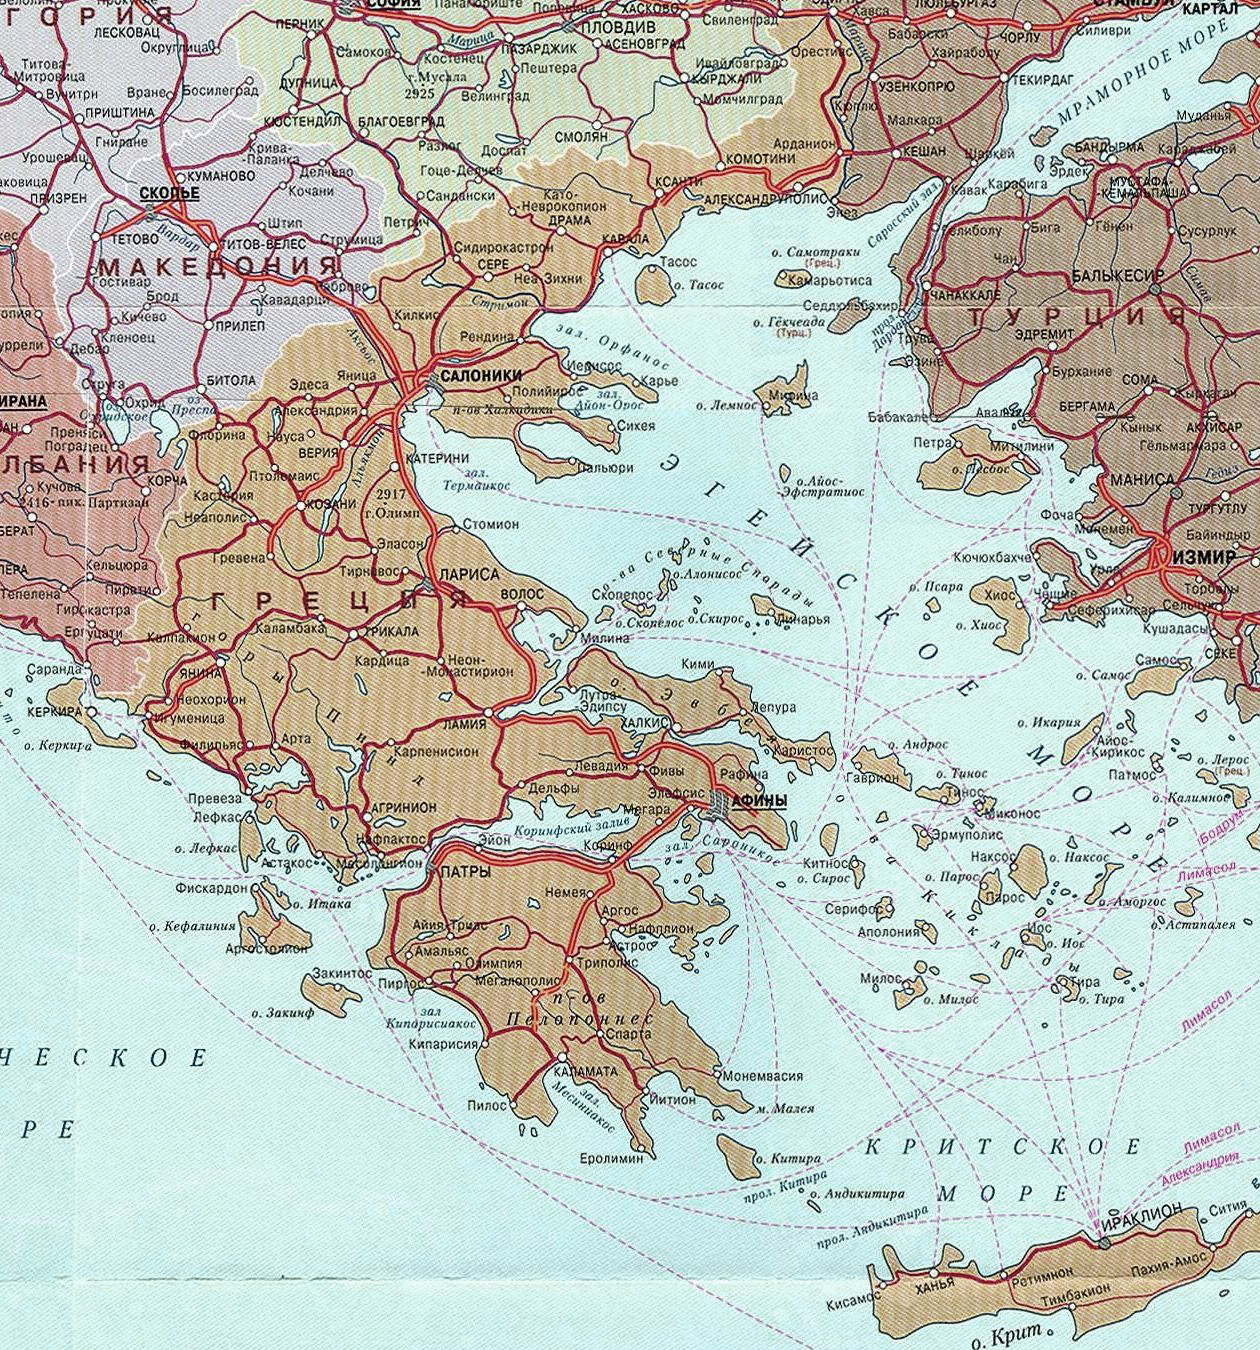 Карта Греции с островами на русском языке